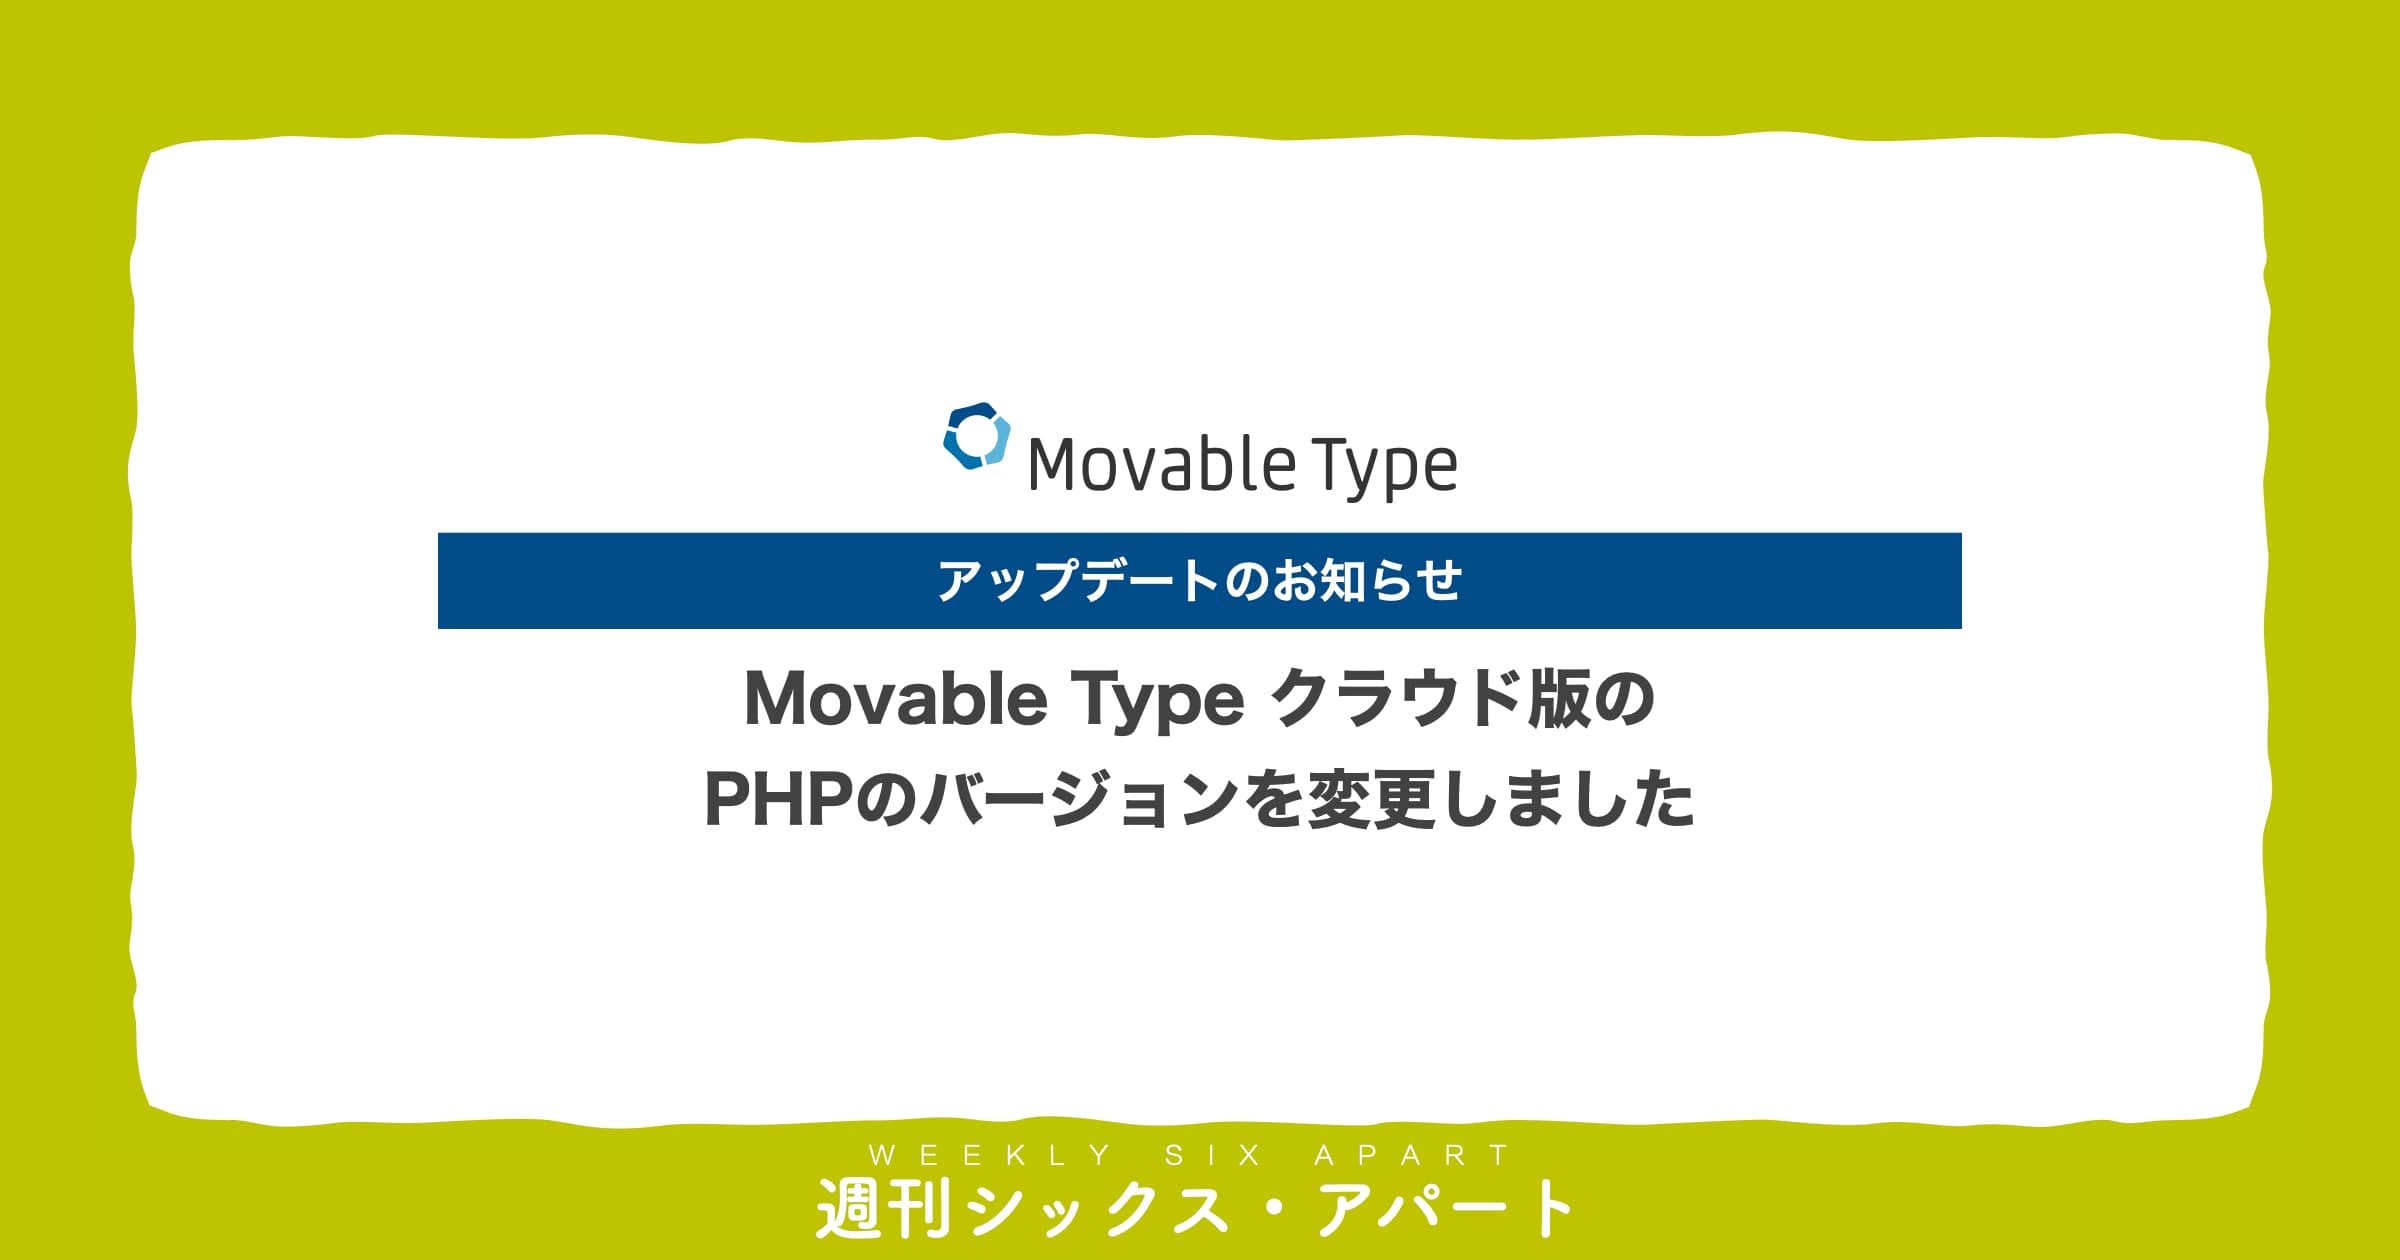 Movable Type クラウド版のPHPのバージョンを変更しました  #週刊SA